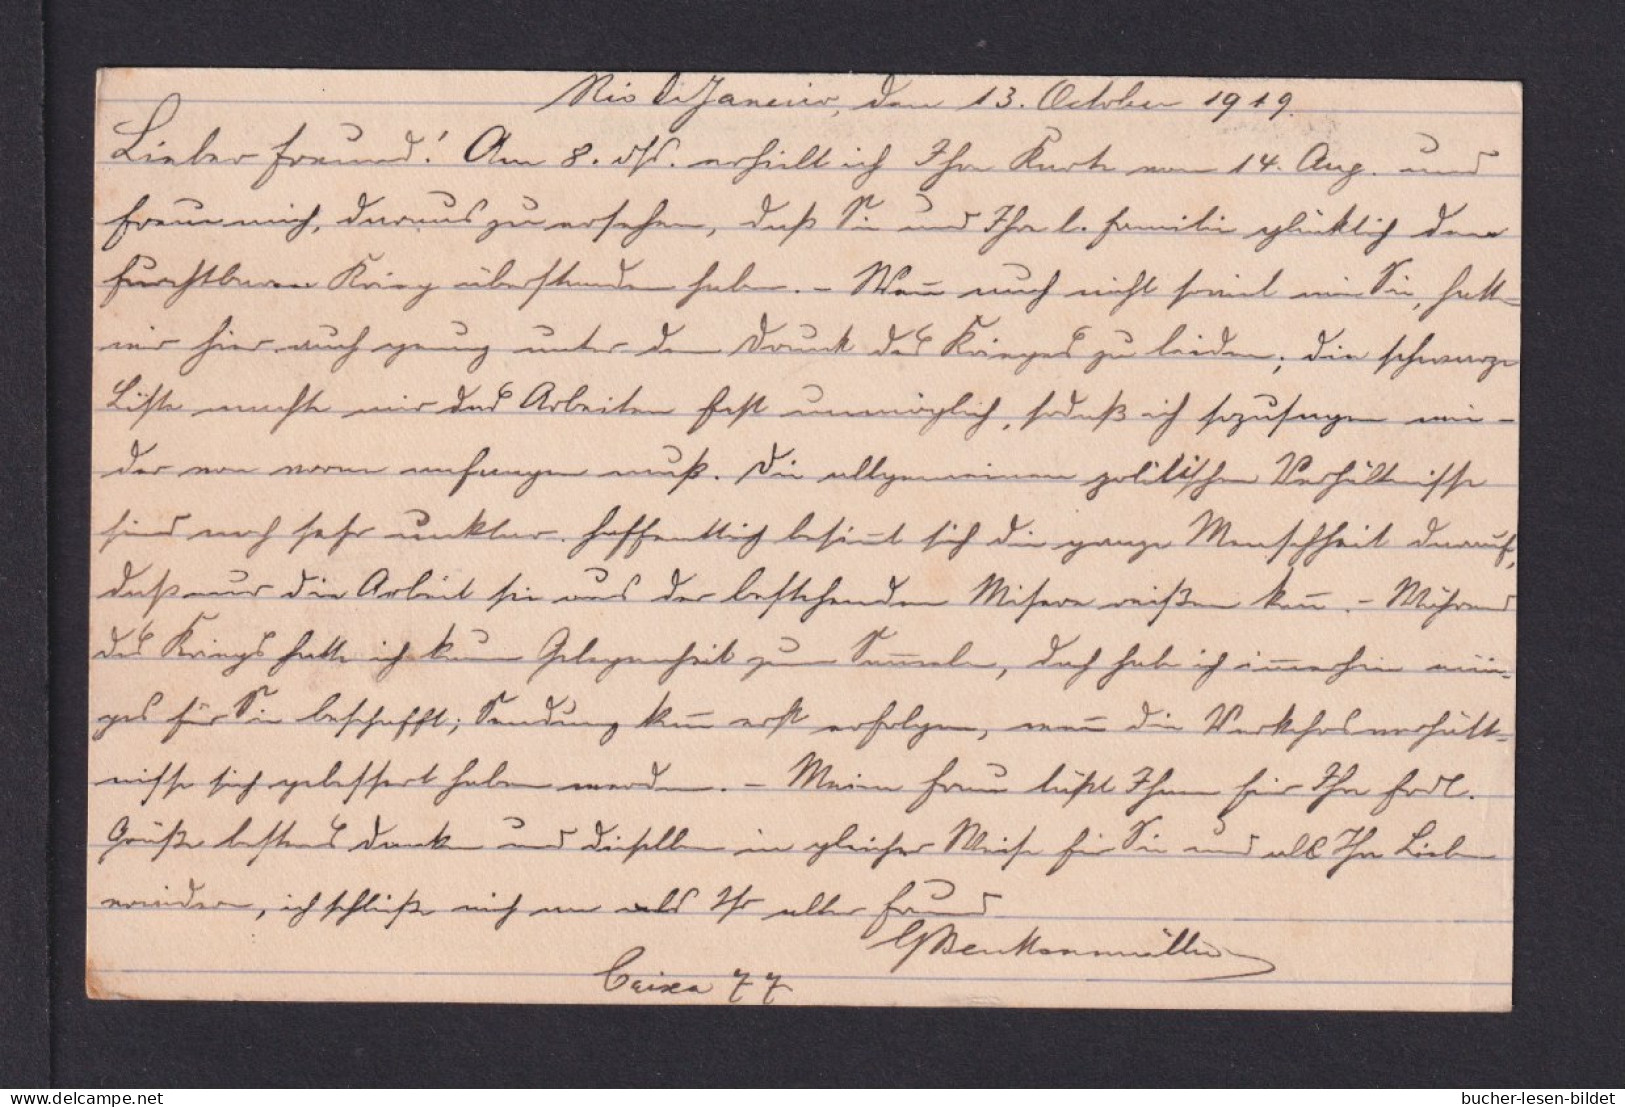 1919 - 50 R. Ganzsache (P 38) Mit Zufrankatur Ab Rio Nach München - Lettres & Documents